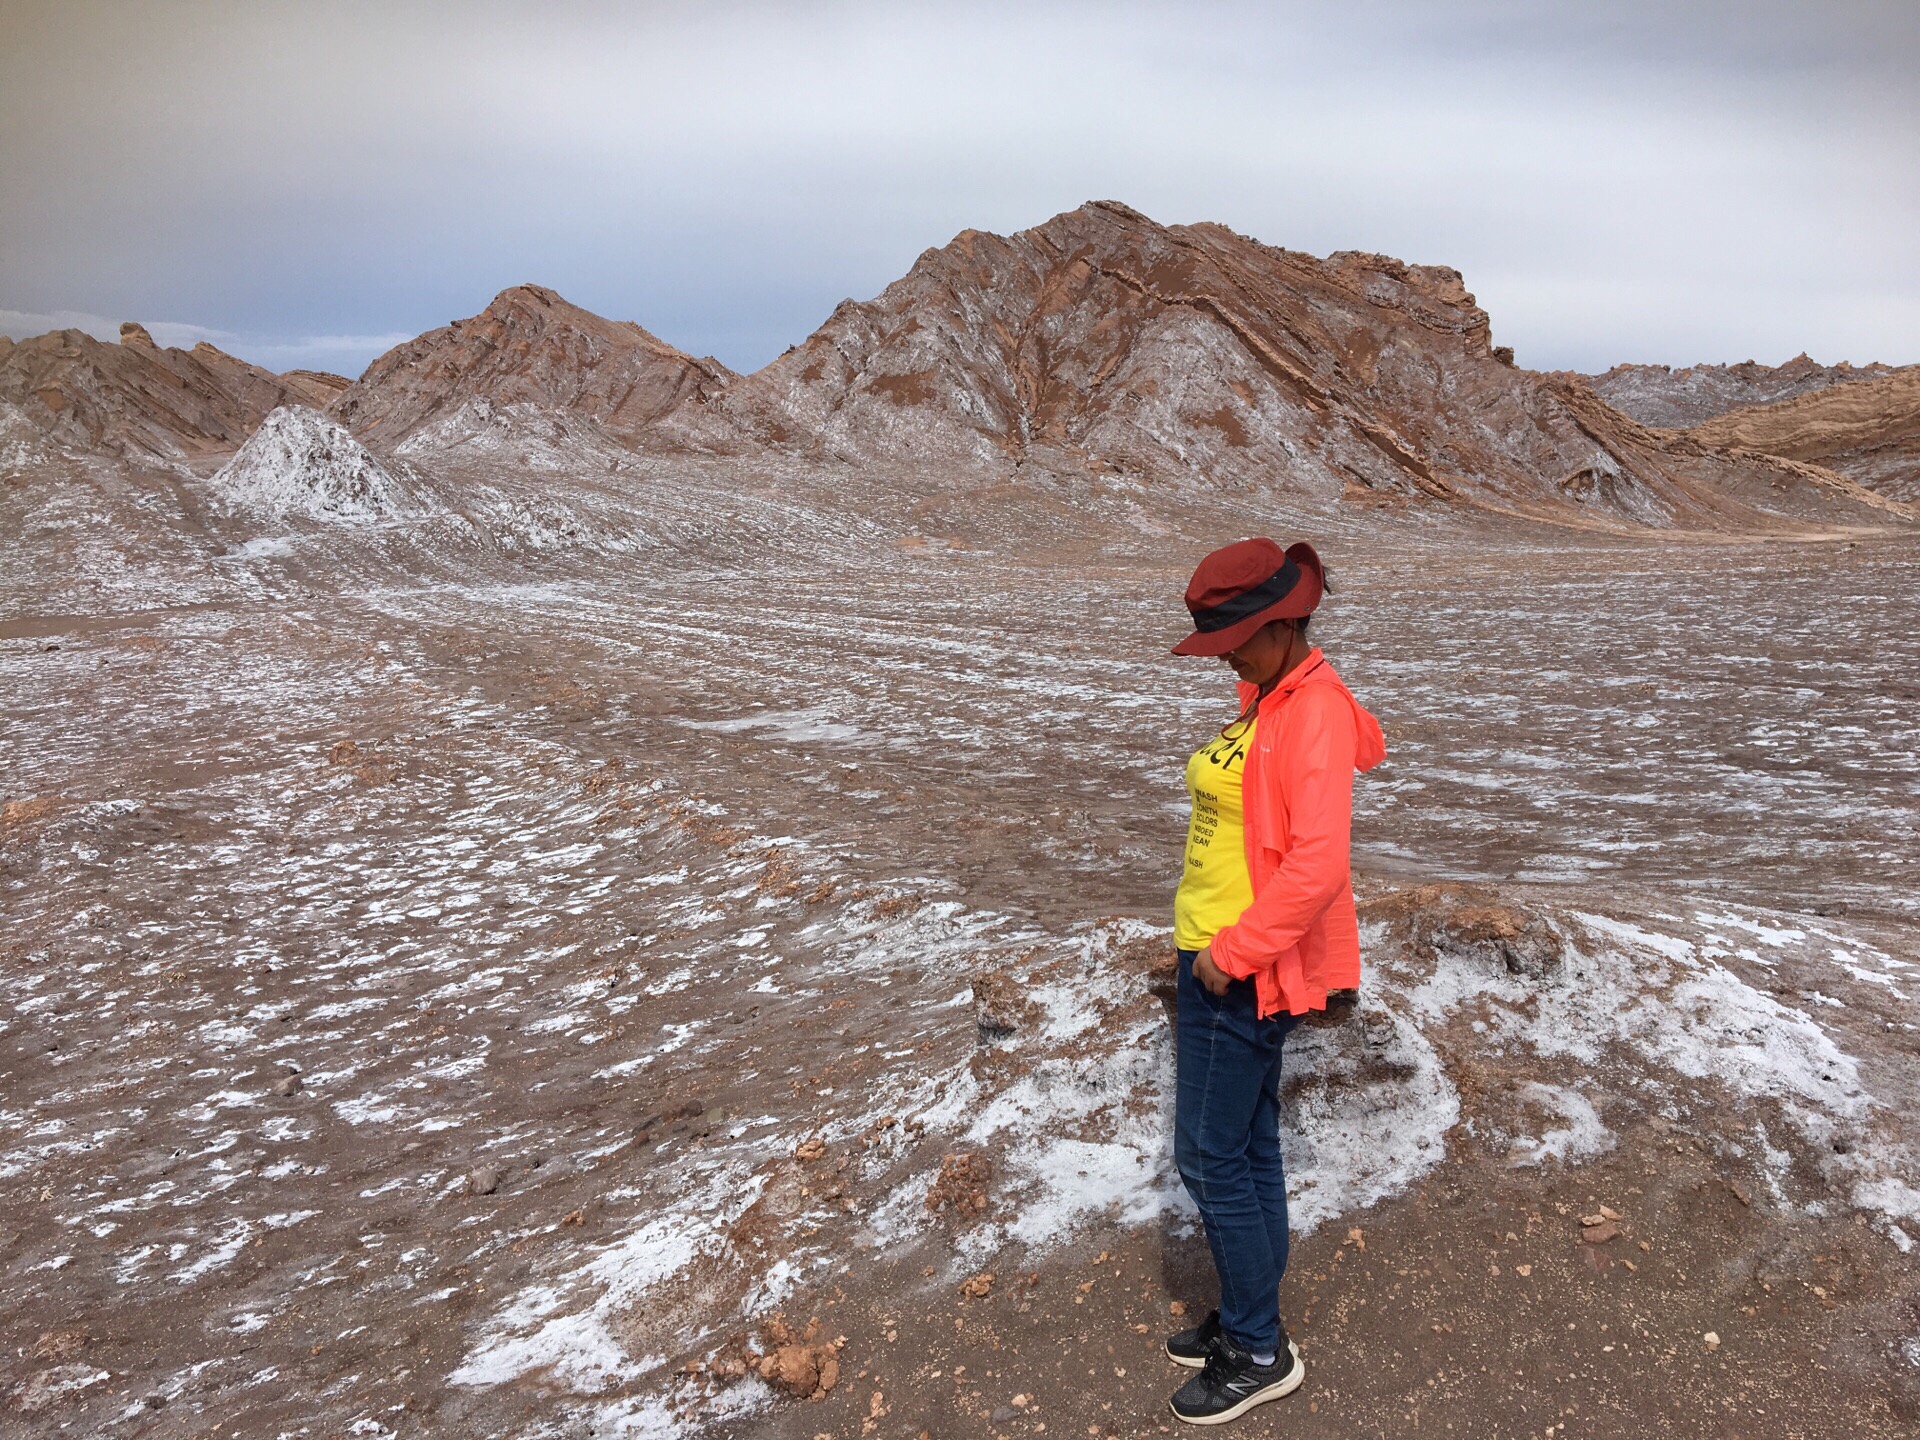 智利北部 Atacama 沙漠 月亮谷落日半日游  前几天还是沙漠突发大水 所有景点关闭 我们在20